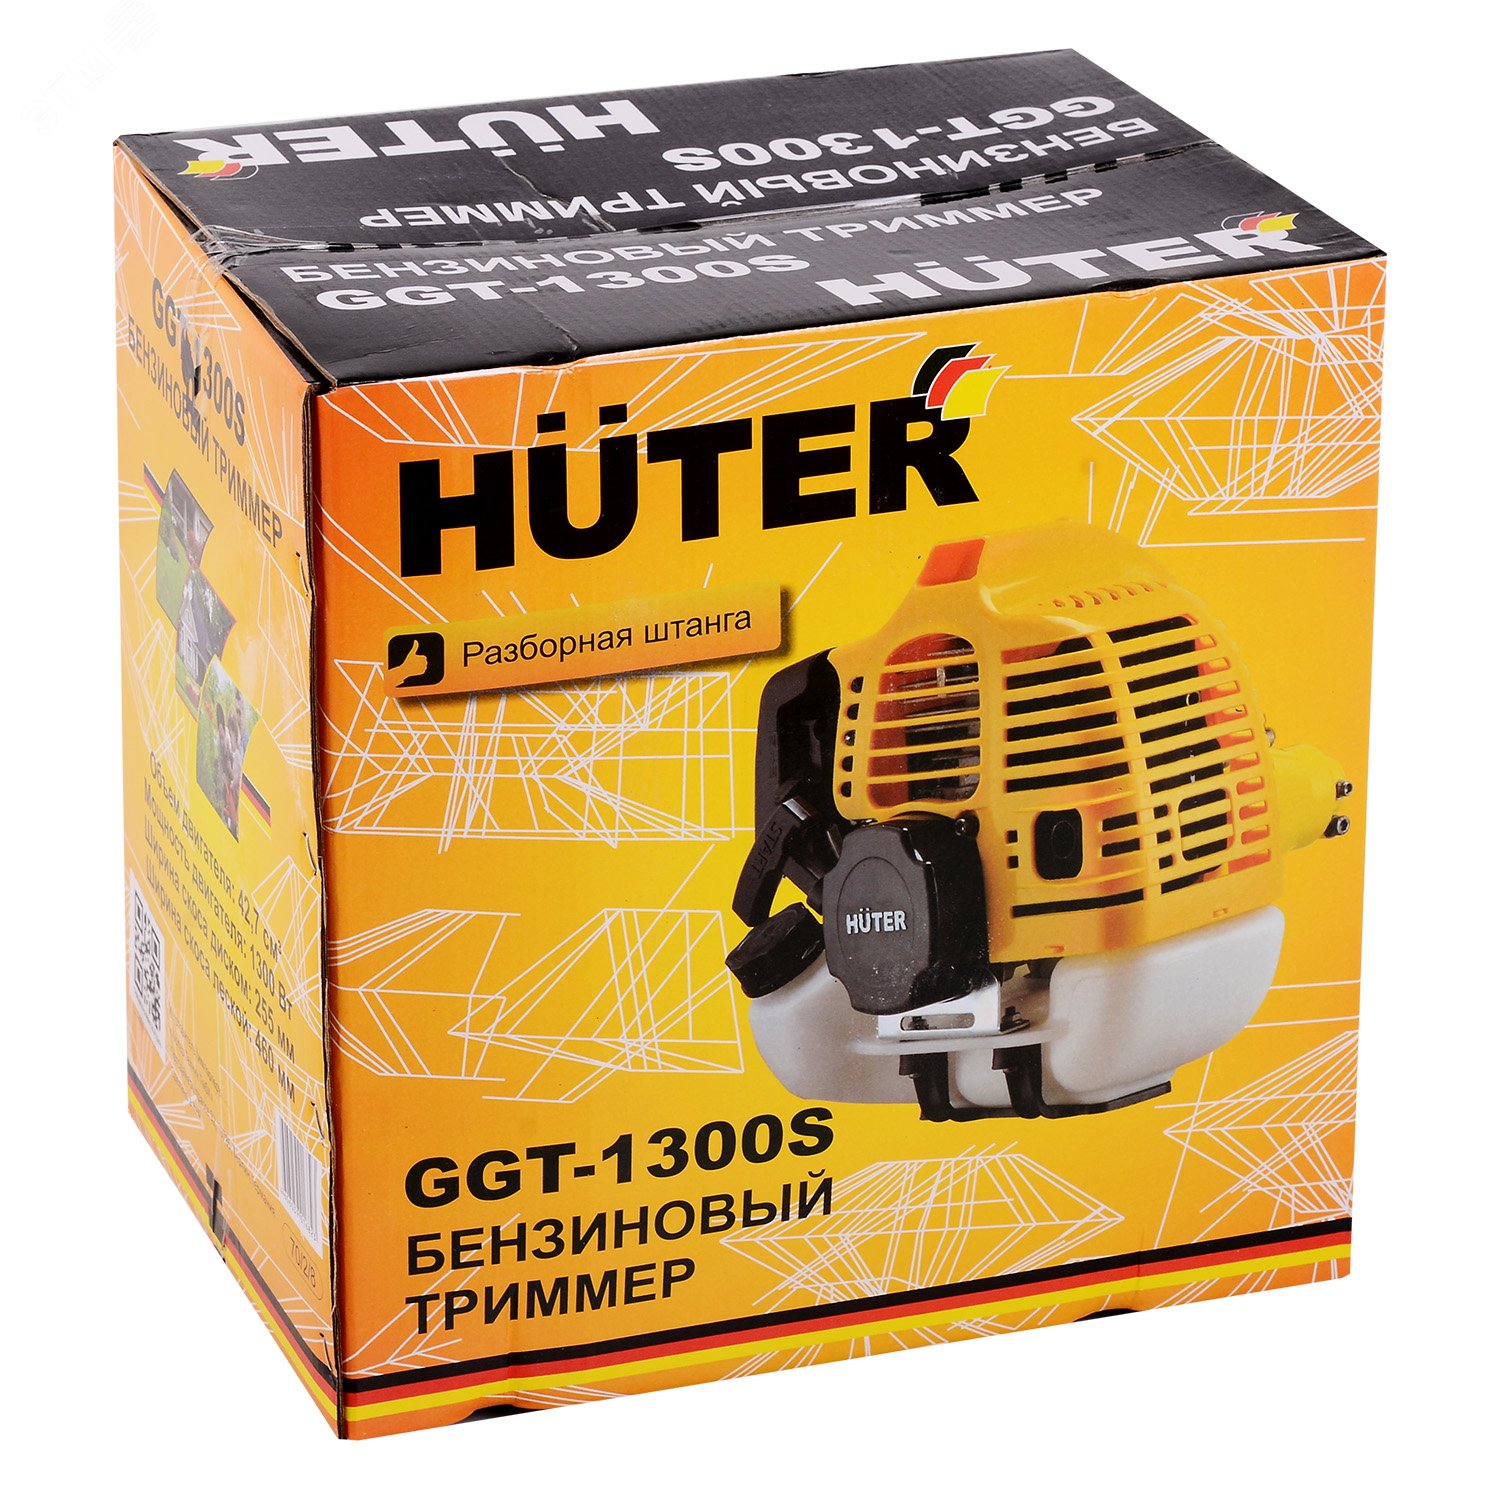 Триммер бензиновый GGT-1300S 70/2/8 Huter - превью 9